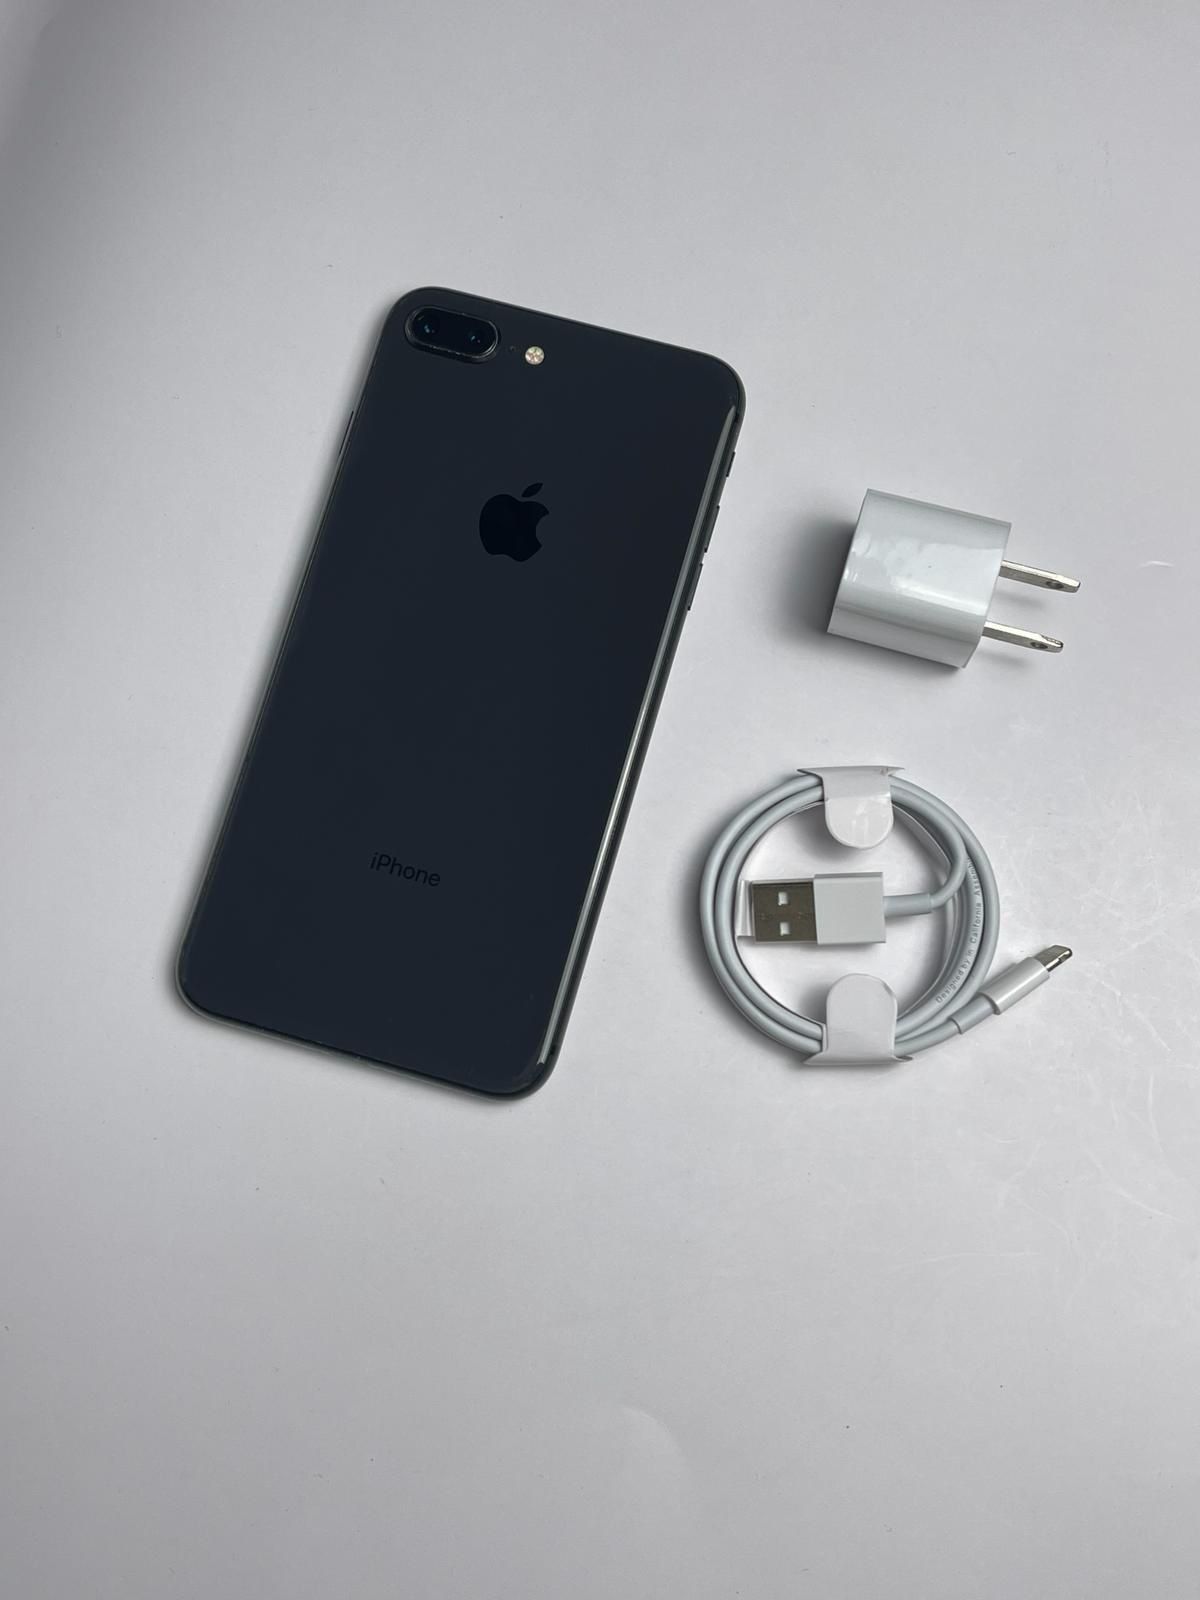 Apple iPhone 8 Plus Unlocked 